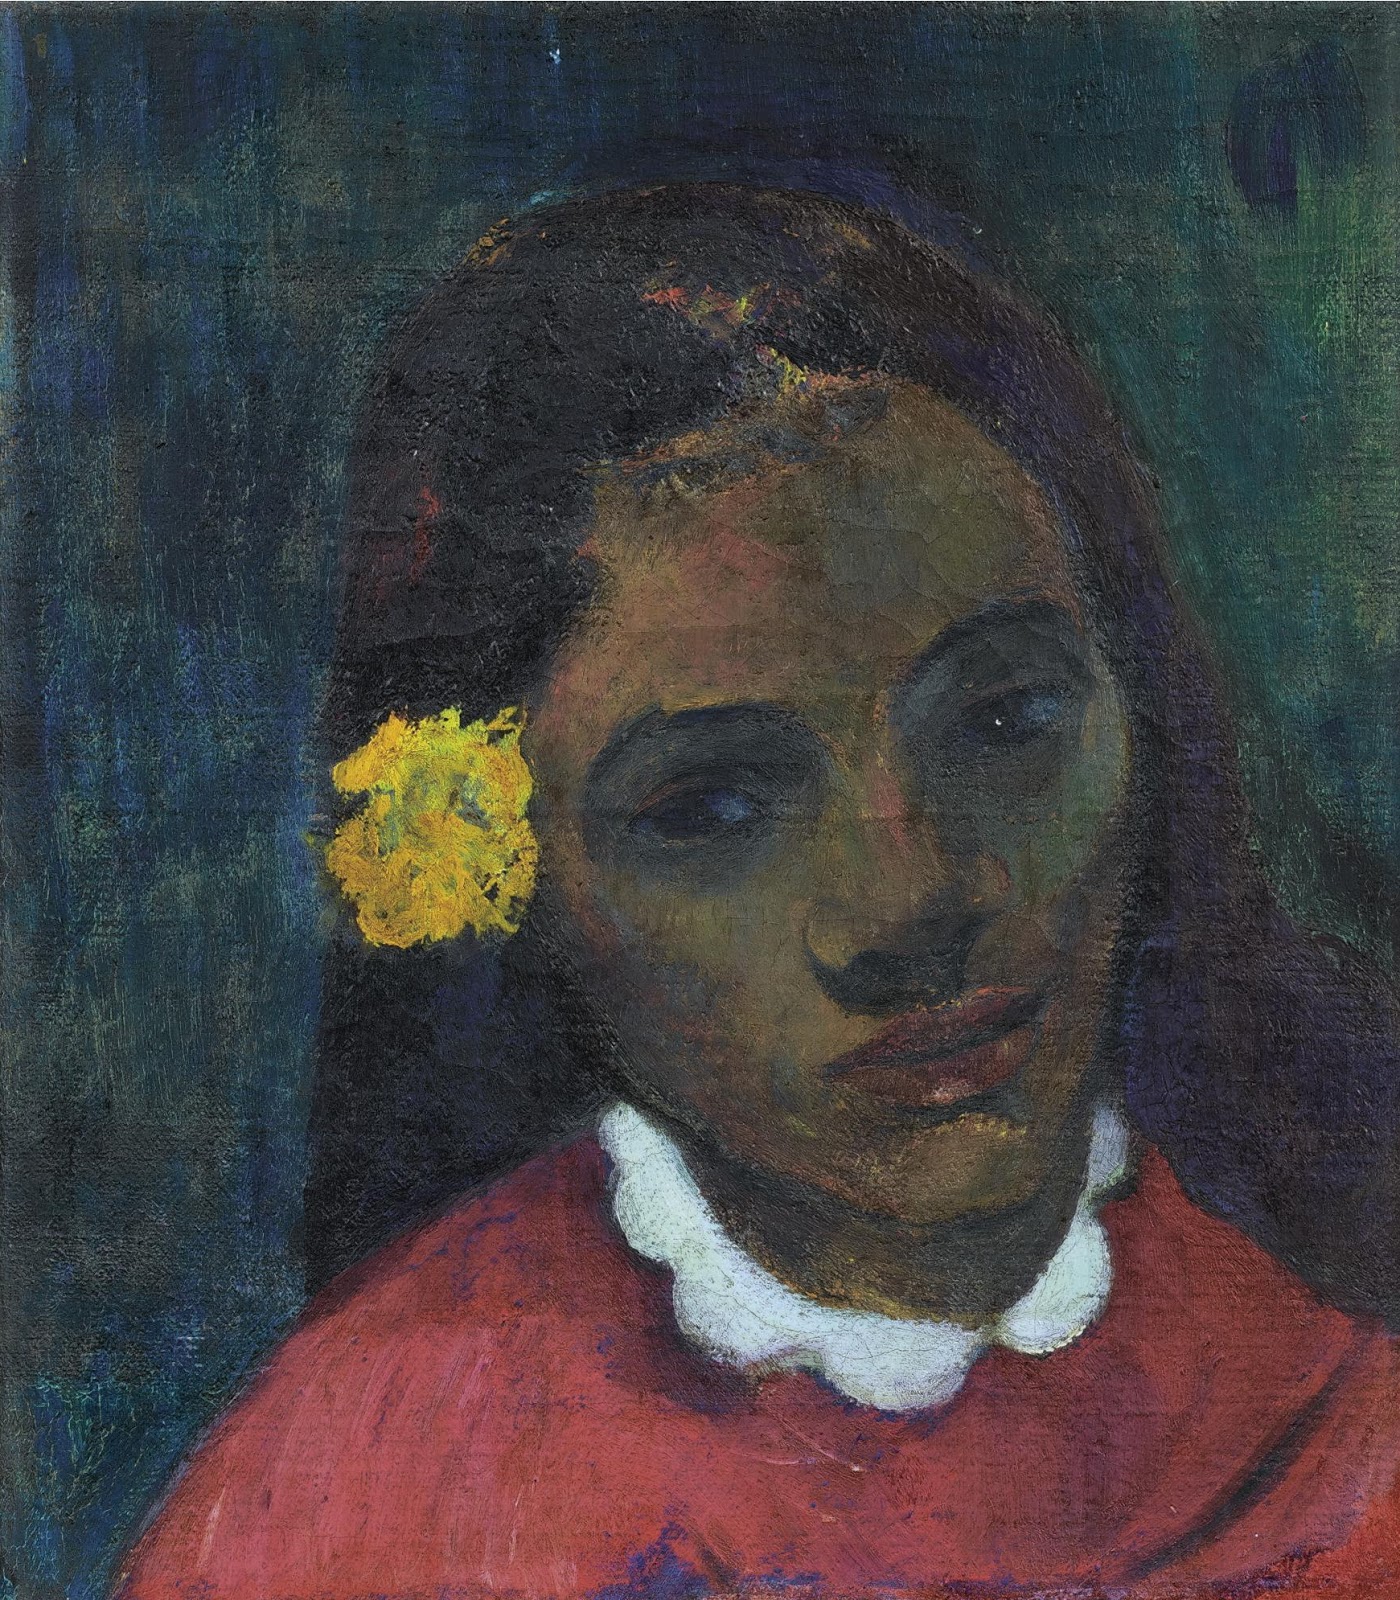 Paul+Gauguin-1848-1903 (392).jpg